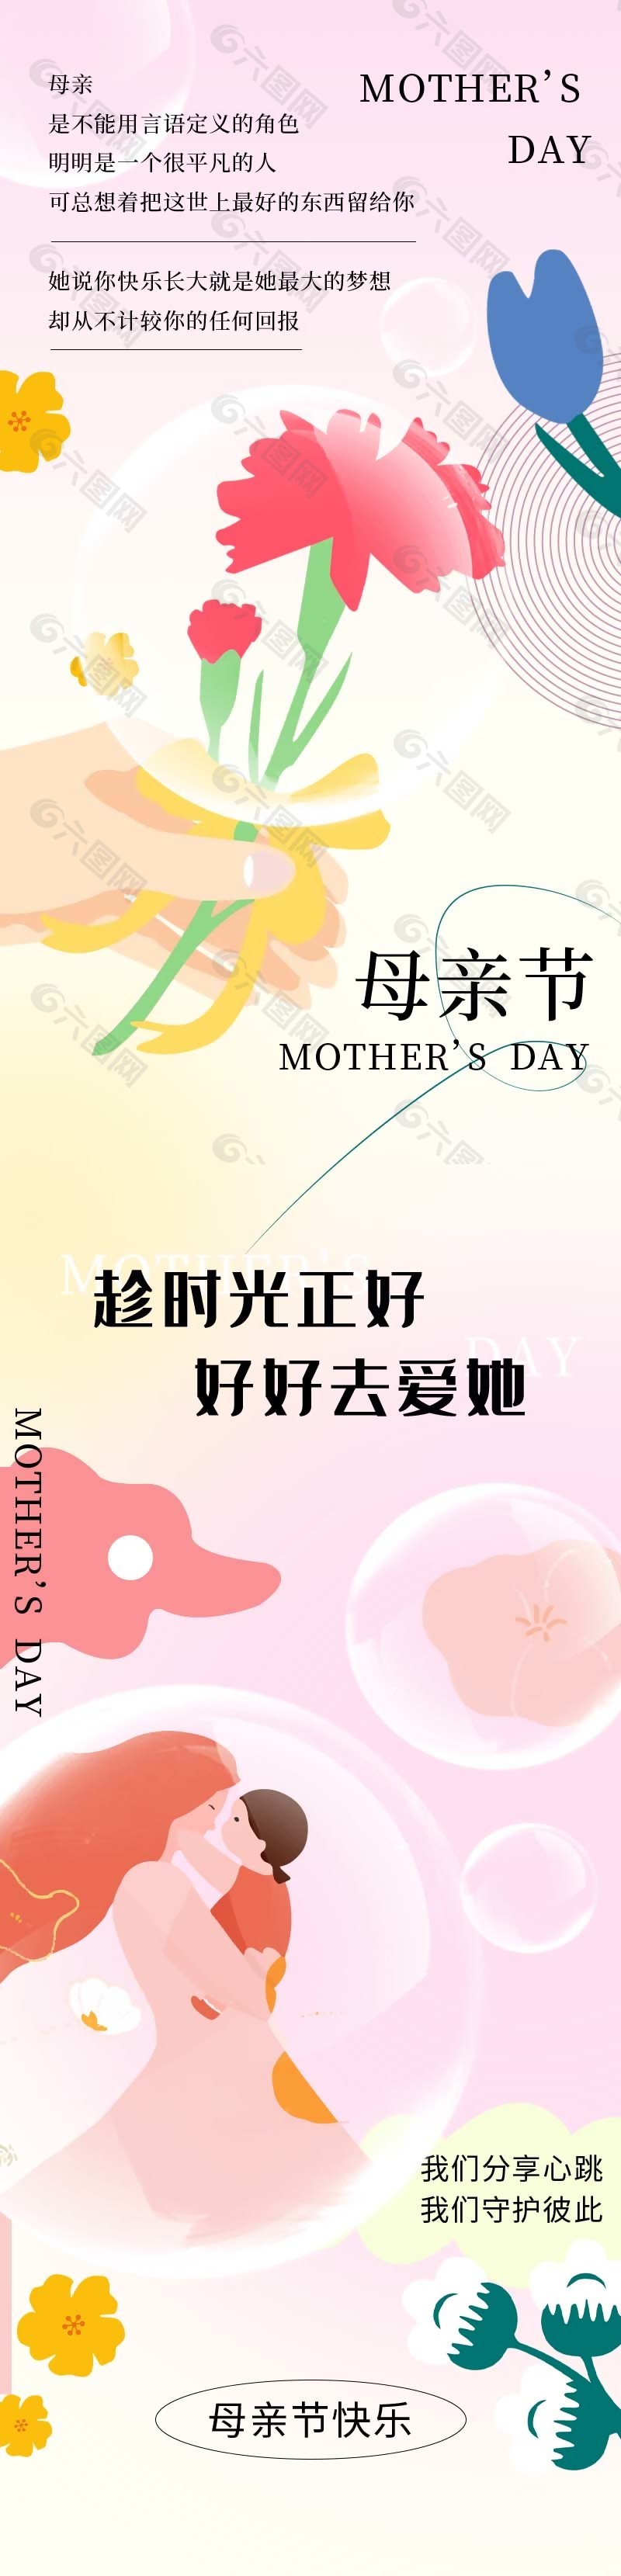 母亲节快乐图文搭配H5长图素材模板